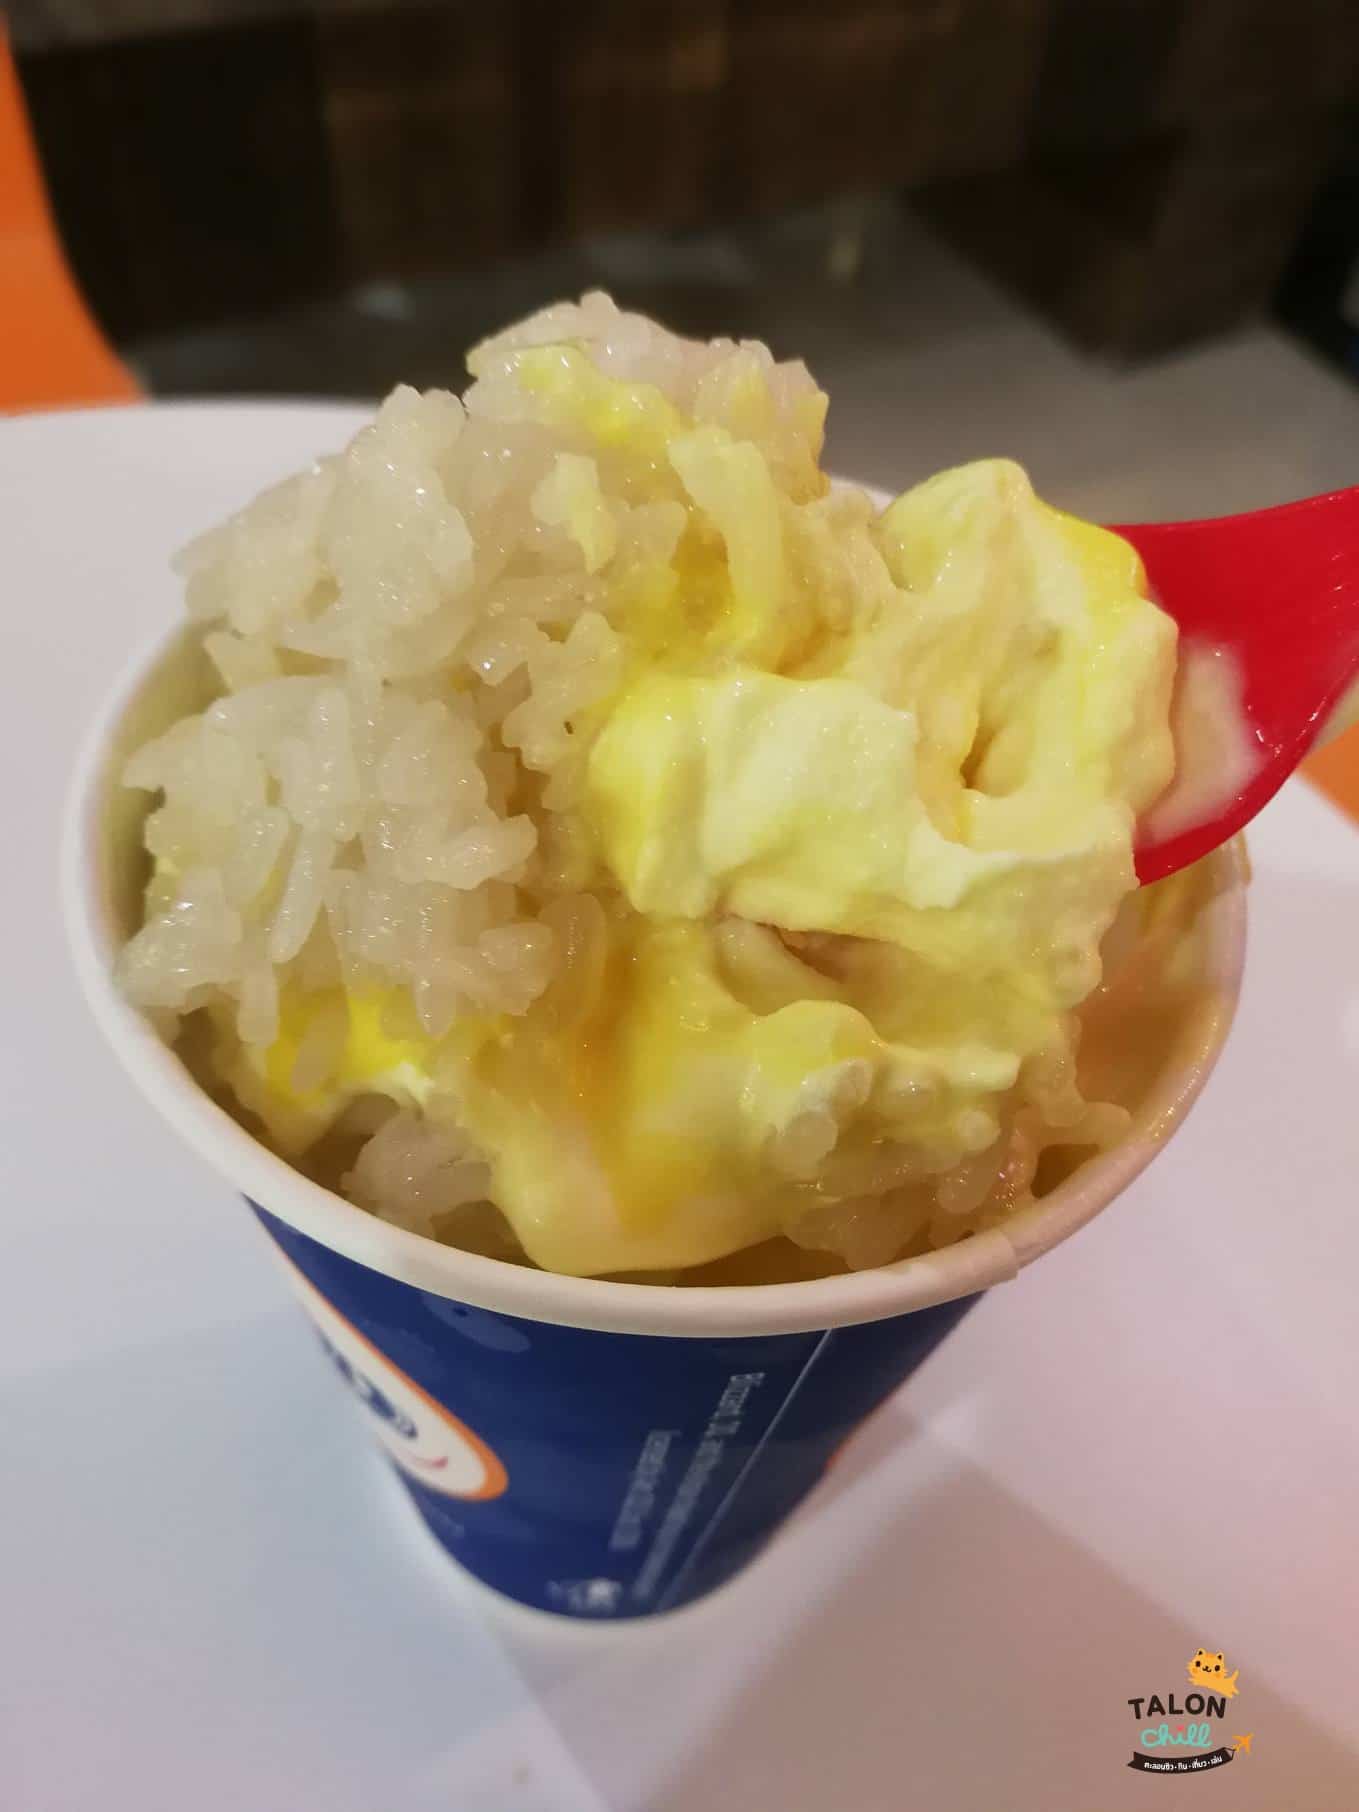 [รีวิว] ไอศครีม Dairyqueen (แดรี่ควีน) ทุเรียนหมอนทองบลิซซาร์ด (durian sticky rice)